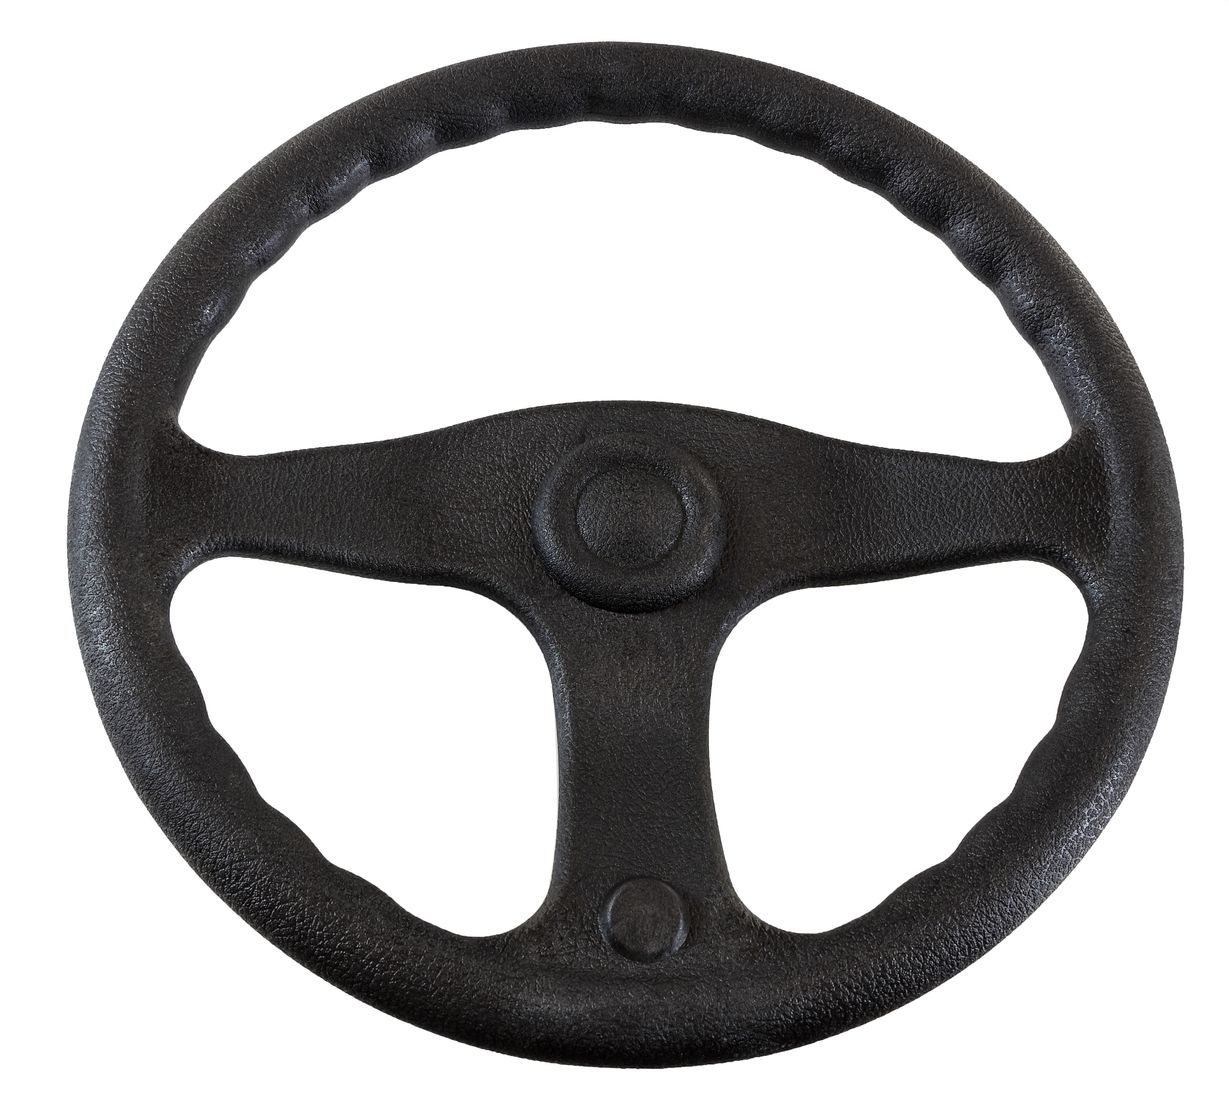 Рулевое колесо E.Chance, обод и спицы черные д. 330 мм D33_EC рулевое колесо morosini bch pu morosinibchpu